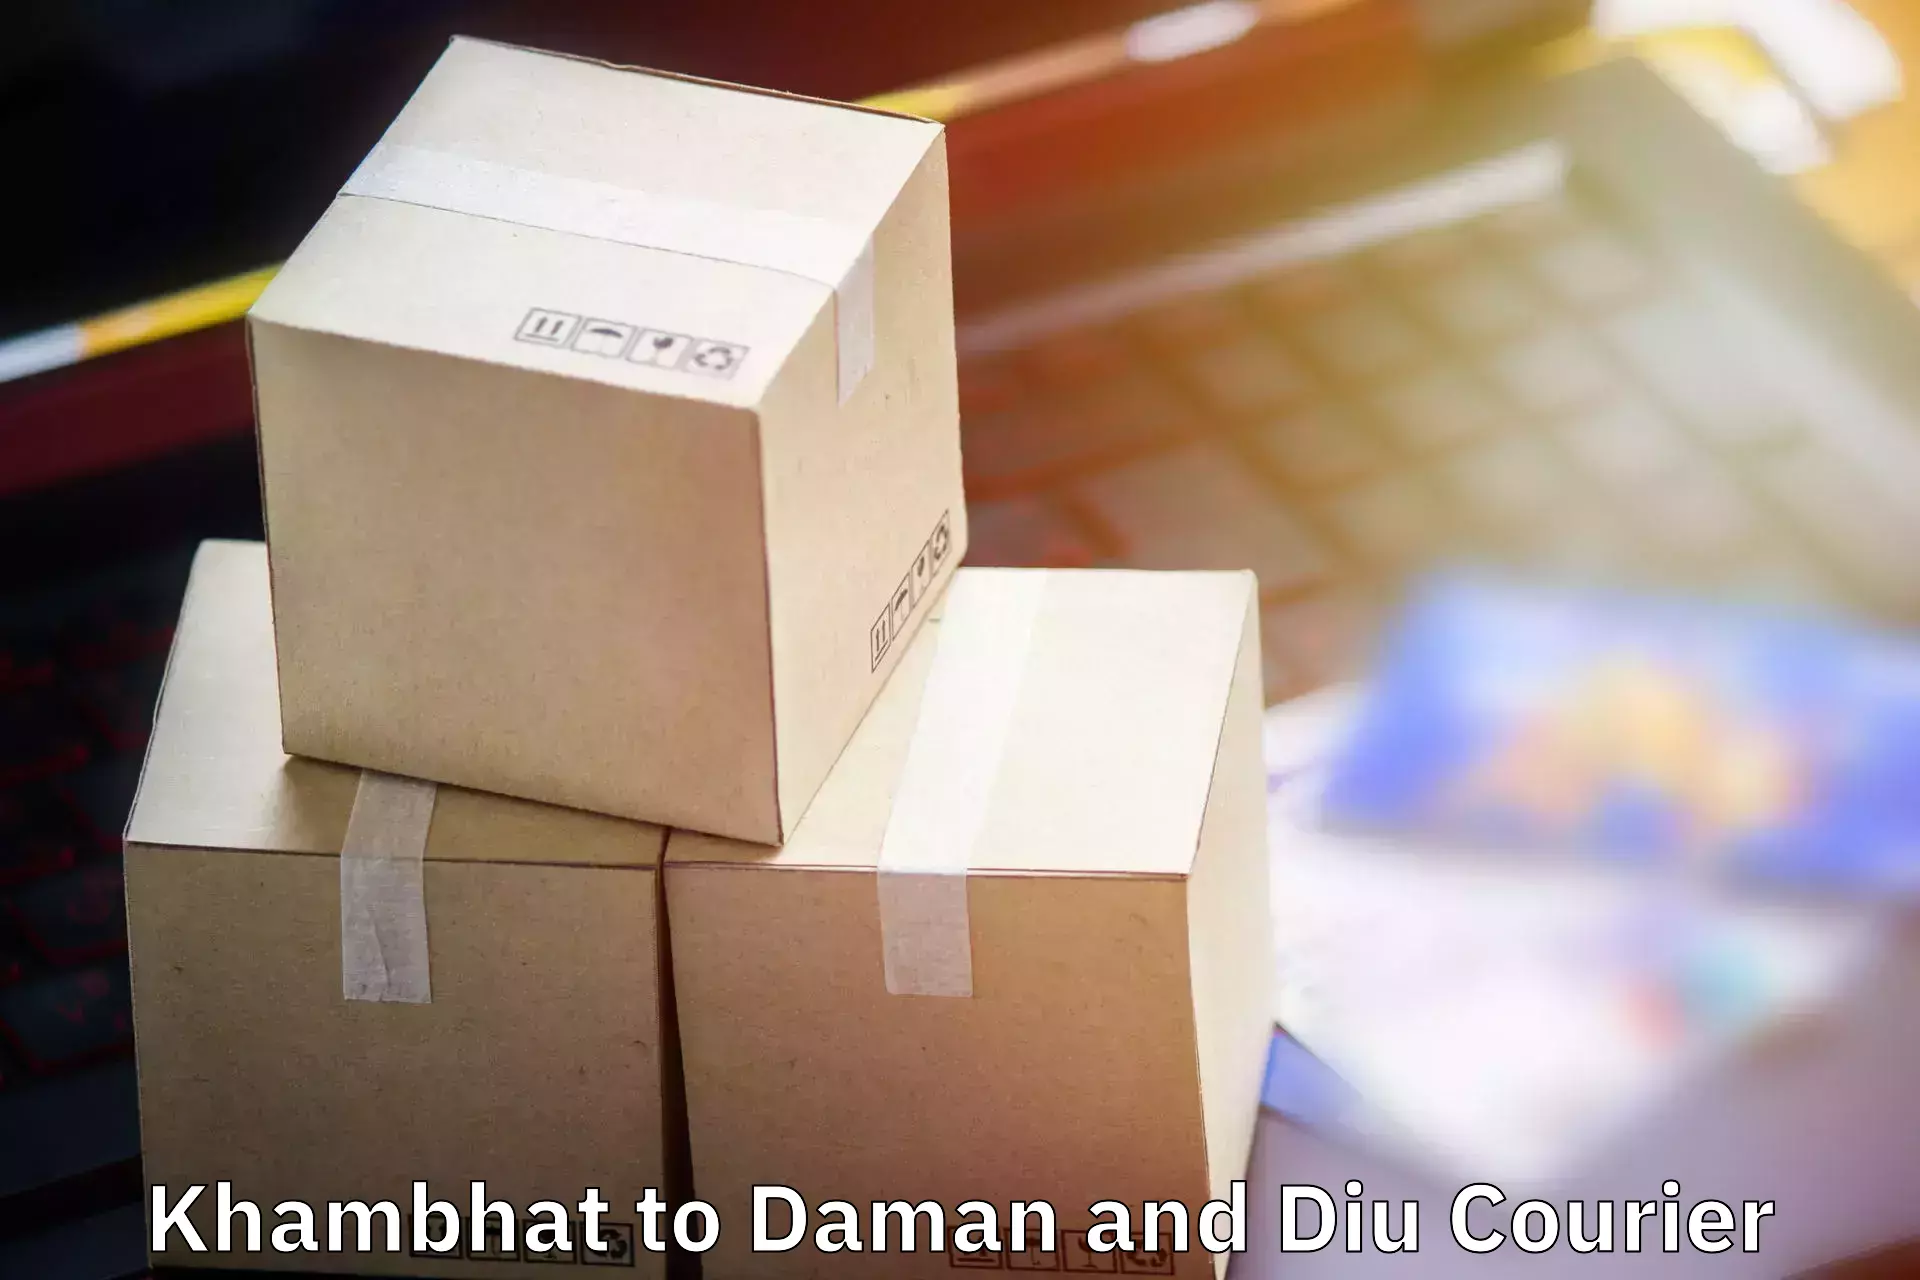 Baggage shipping experts Khambhat to Daman